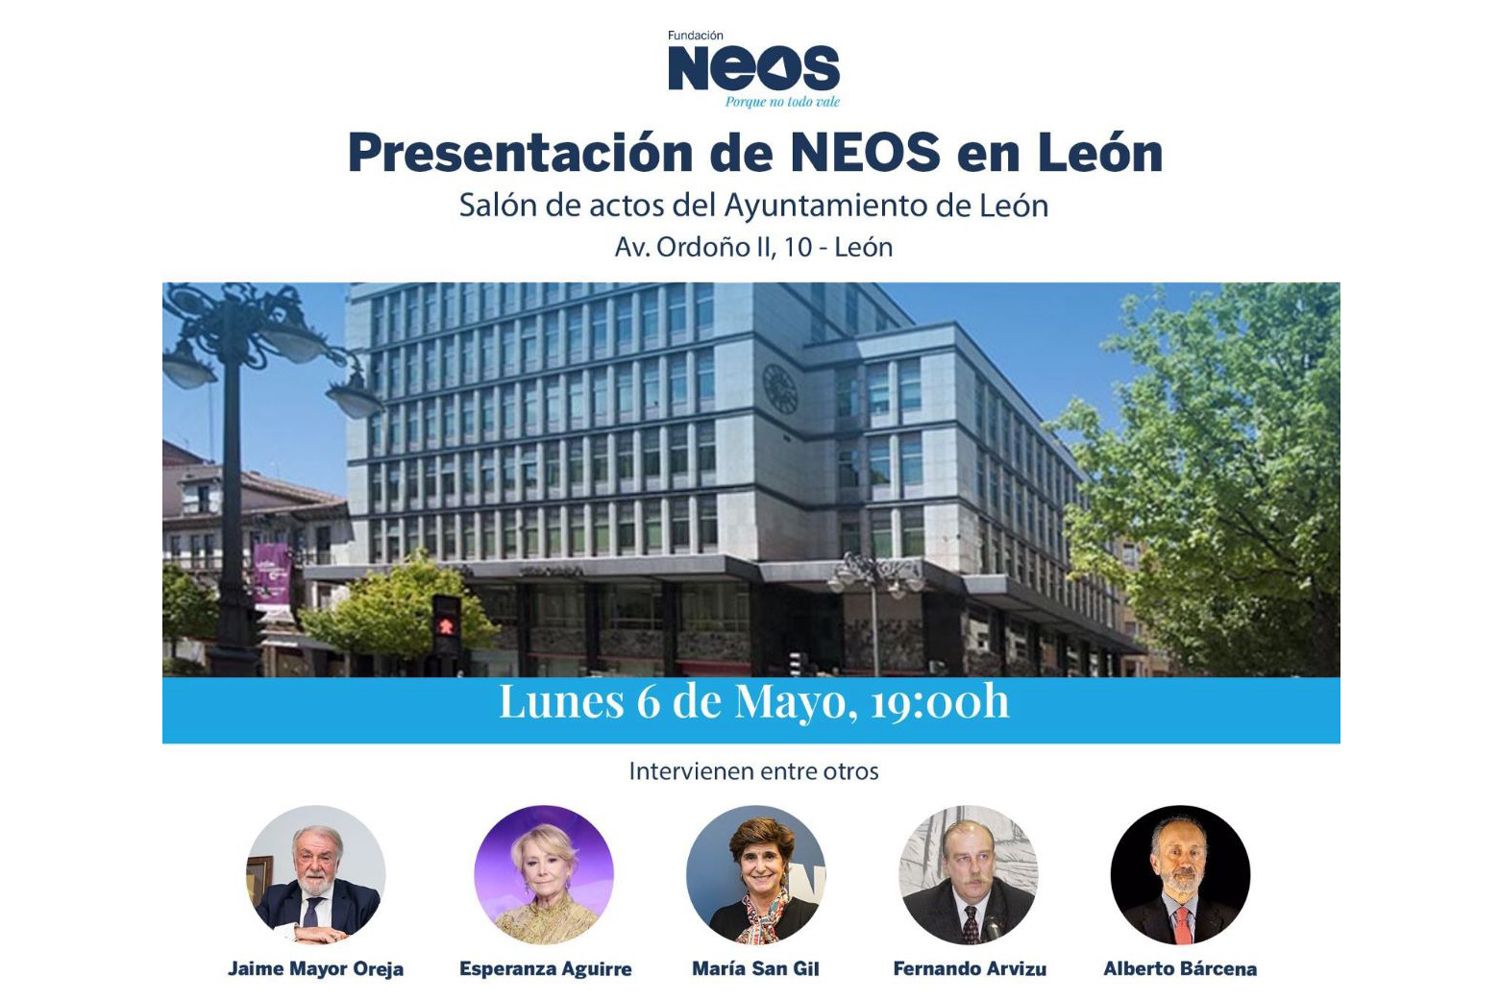 Jaime Mayor Oreja, María San Gil y Esperanza Aguirre presentarán la Fundación Neos en León